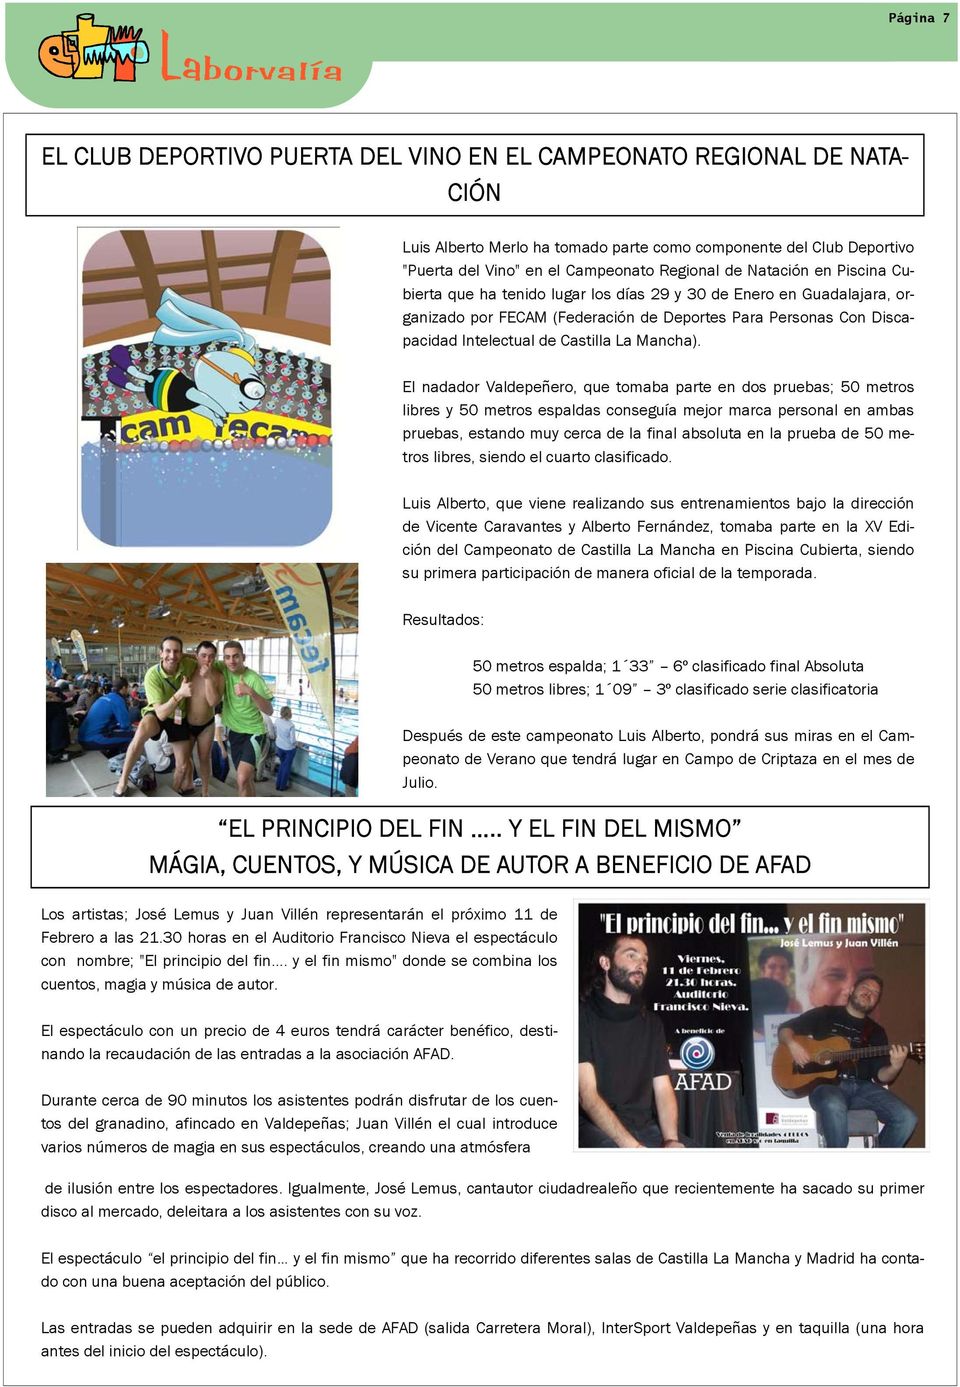 tenido lugar los días LA 29 DISCAPACIDAD y 30 de Enero en Guadalajara, EN LAS organizado por FECAM (Federación de Deportes Para Personas Con Disca- AULAS pacidad Intelectual de Castilla La Mancha).